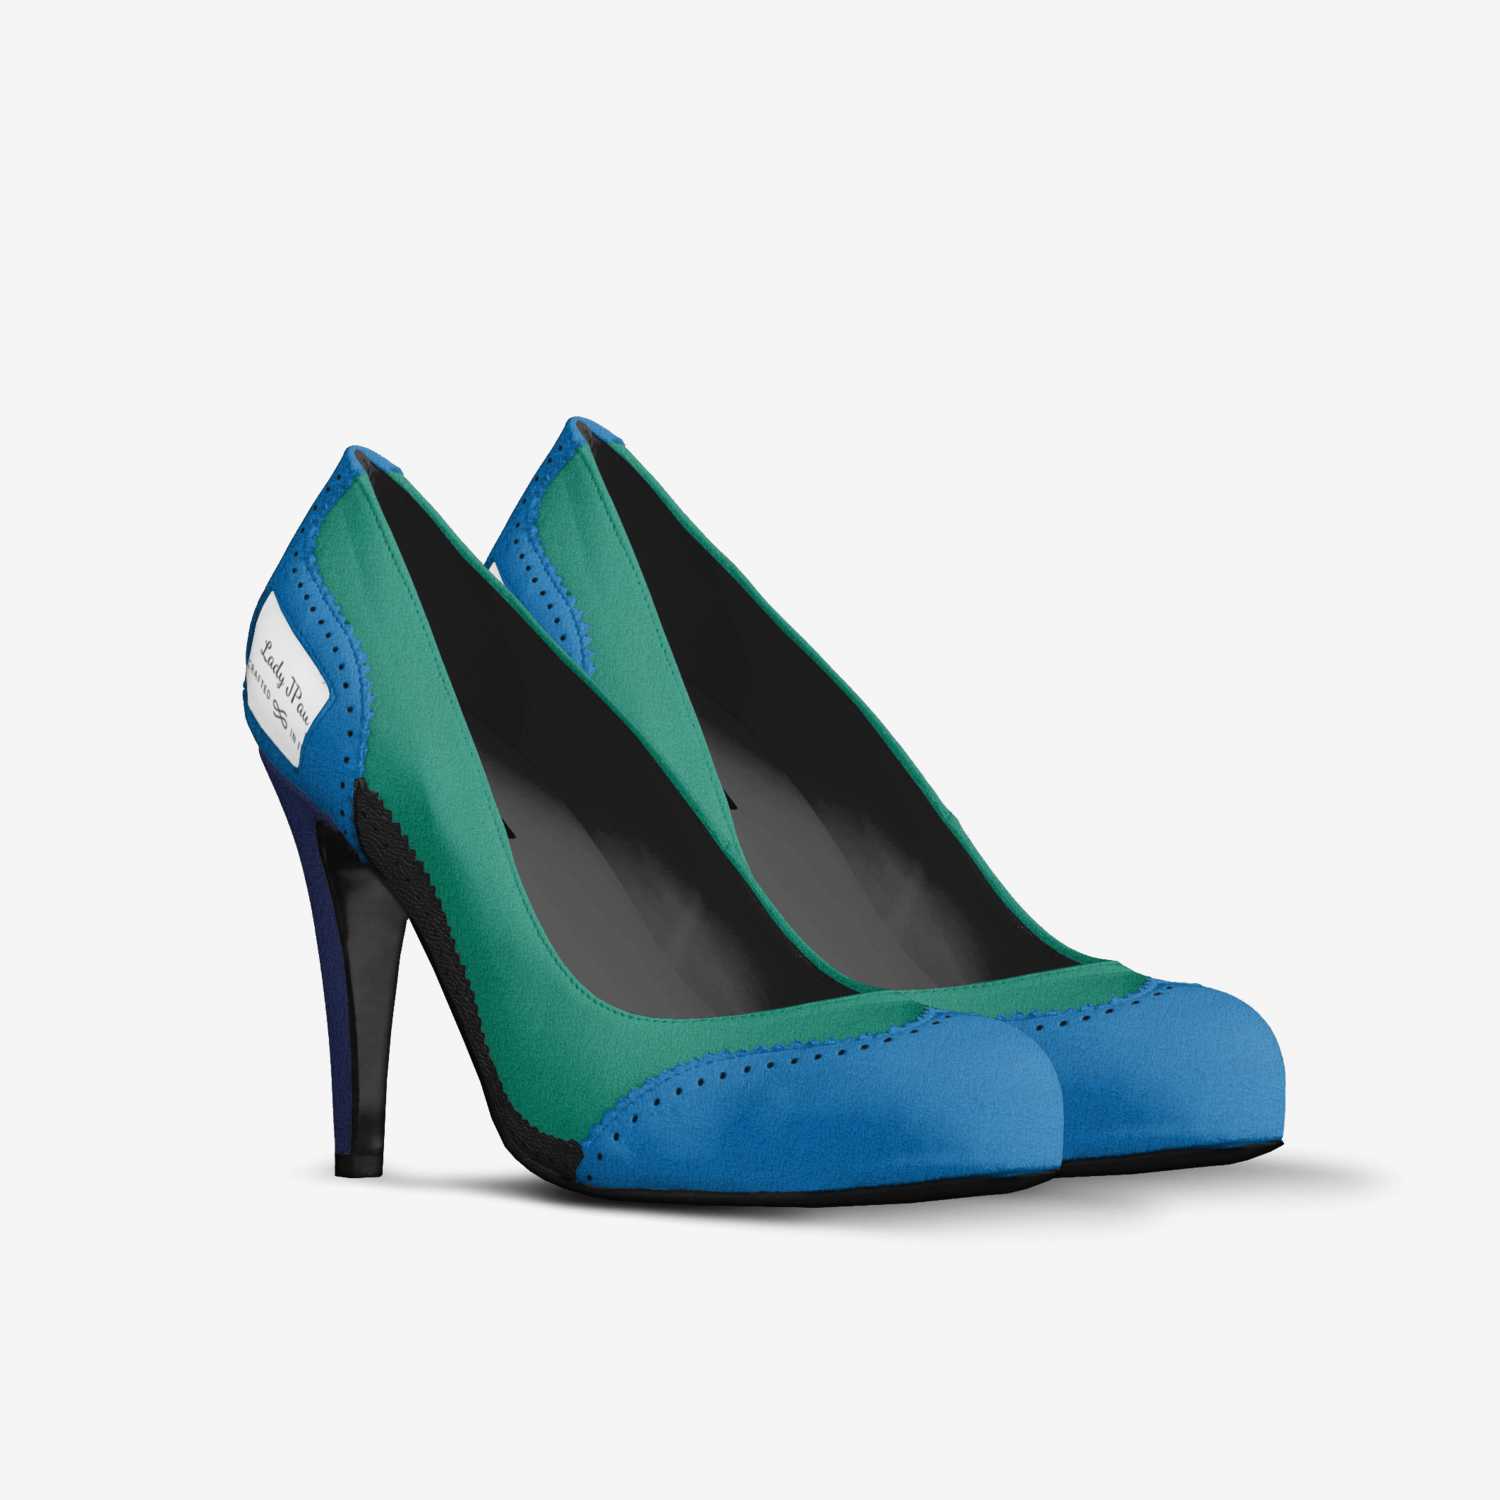 Lady JPau | A Custom Shoe concept by Jeanette Pau